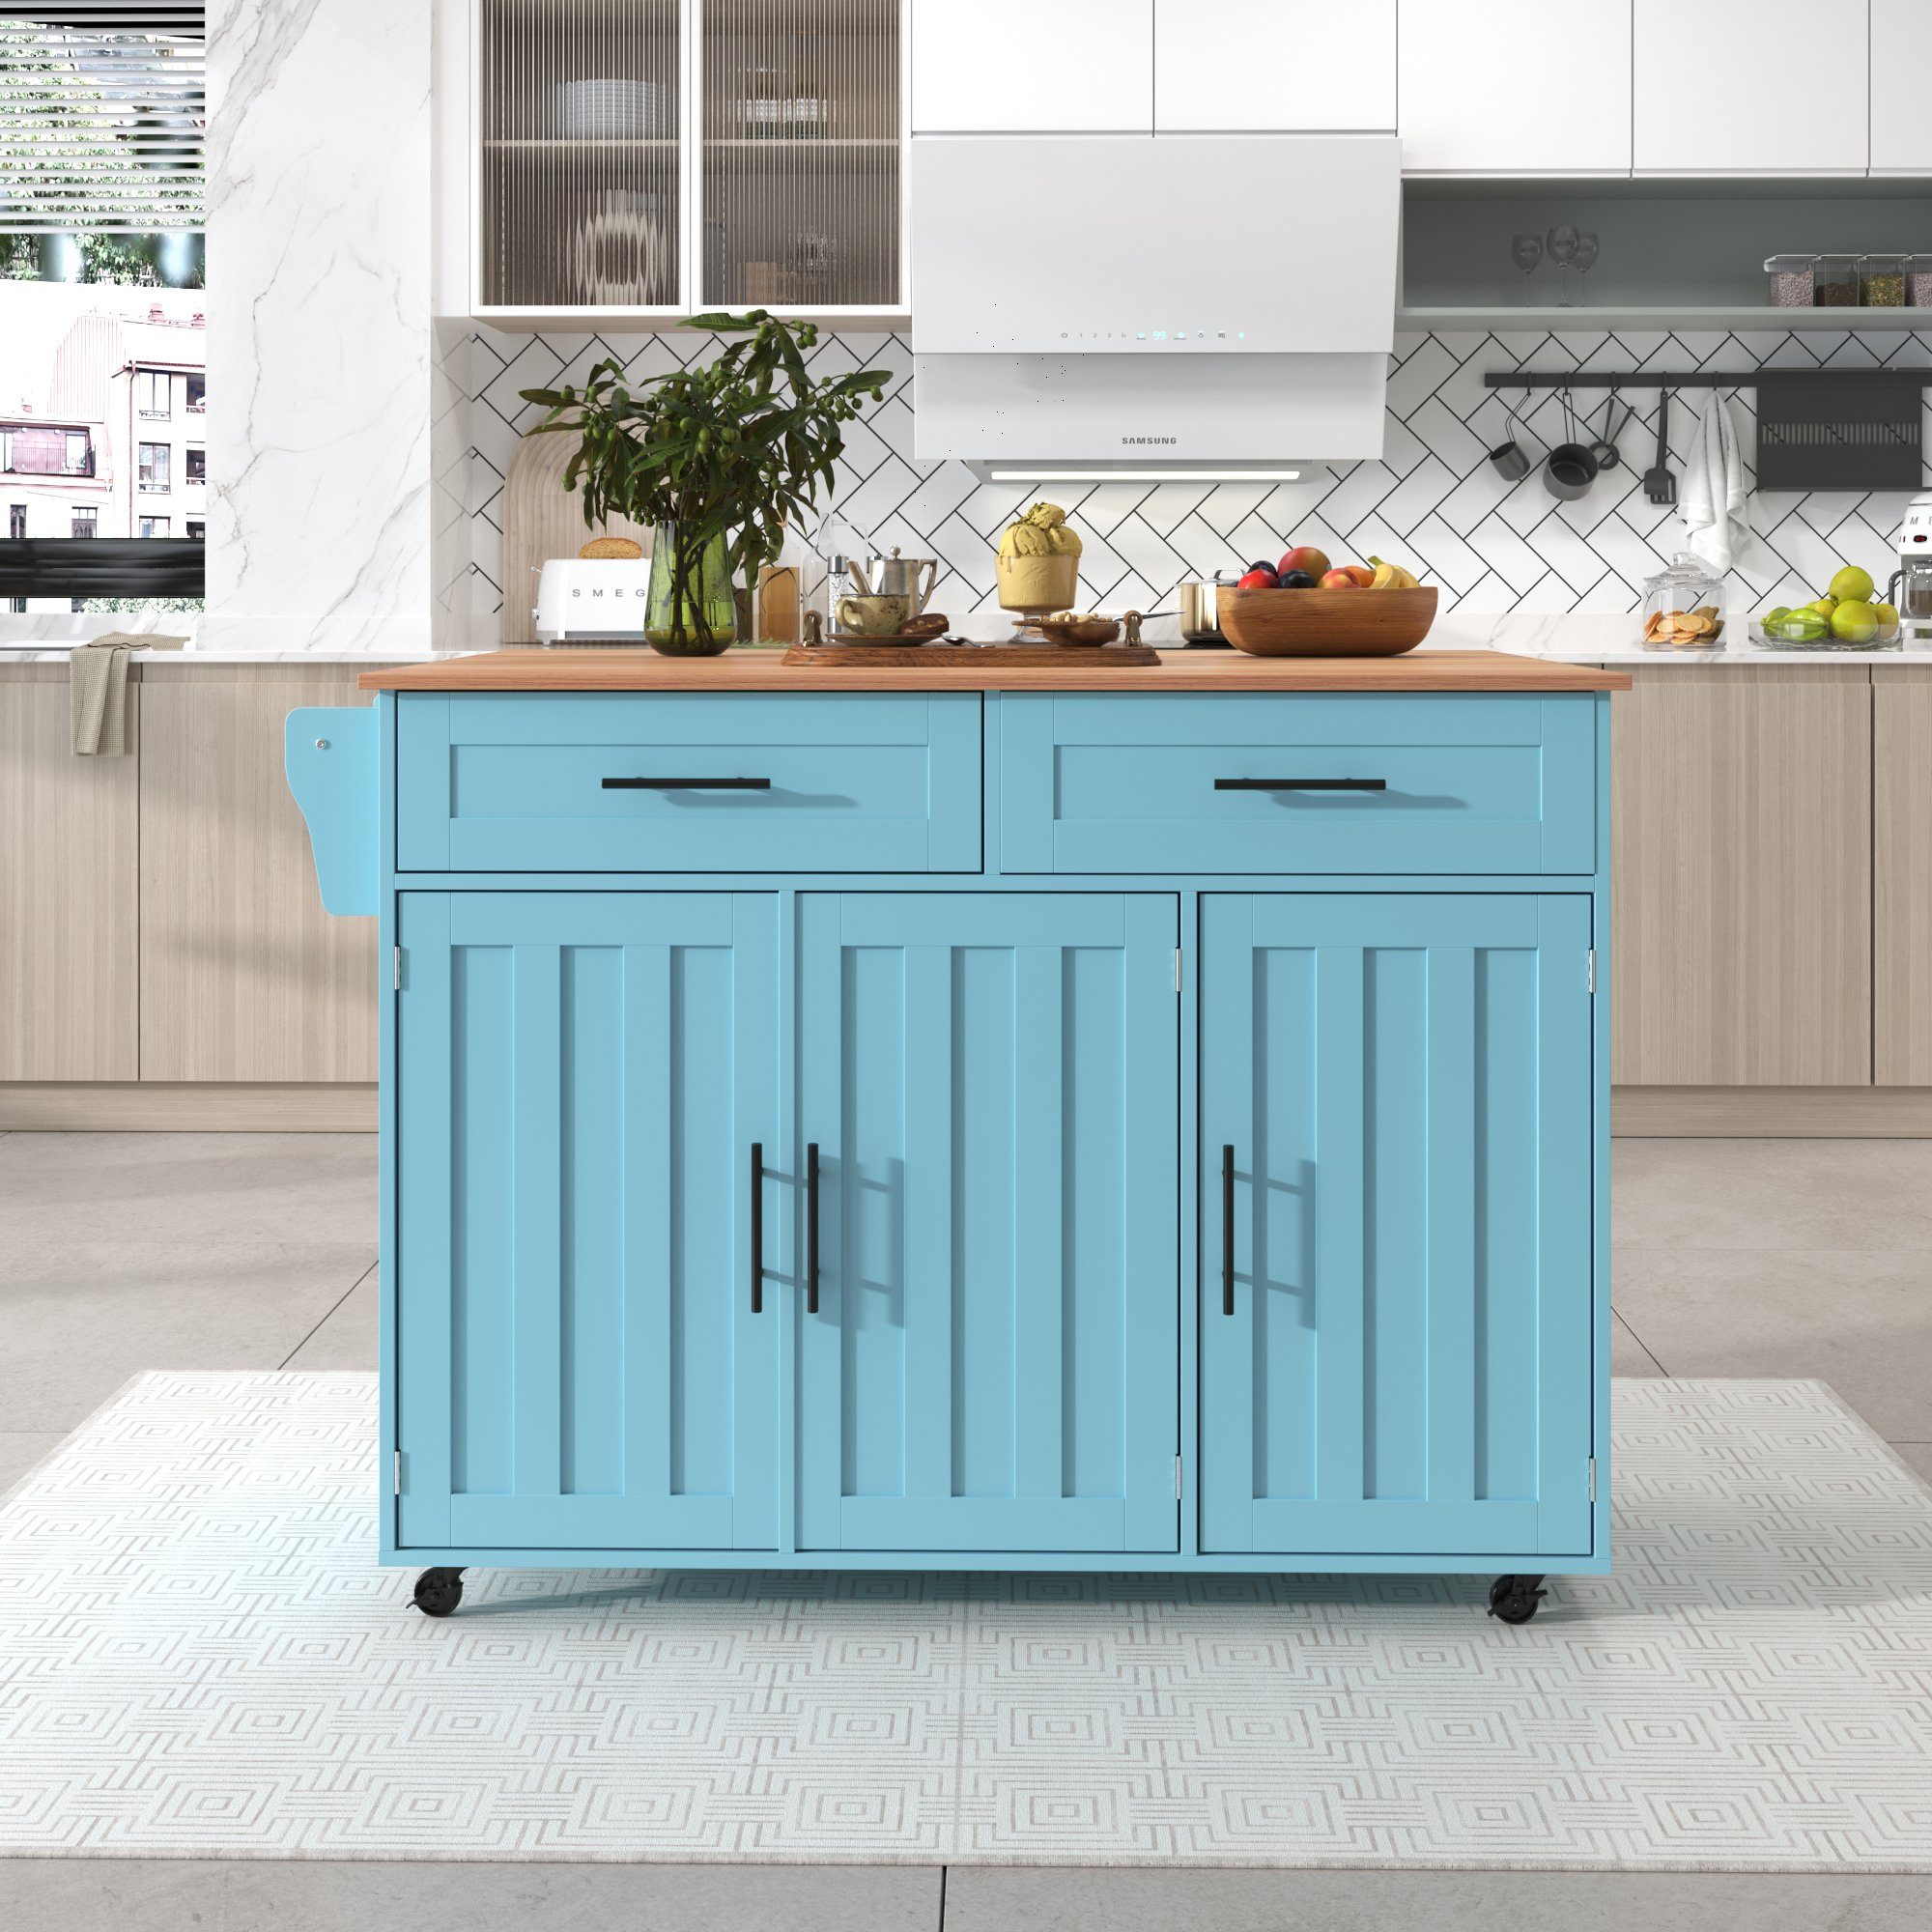 Küchenbuffet GLIESE Anrichte Blau Esstischwagen / mit Klapptischplatte